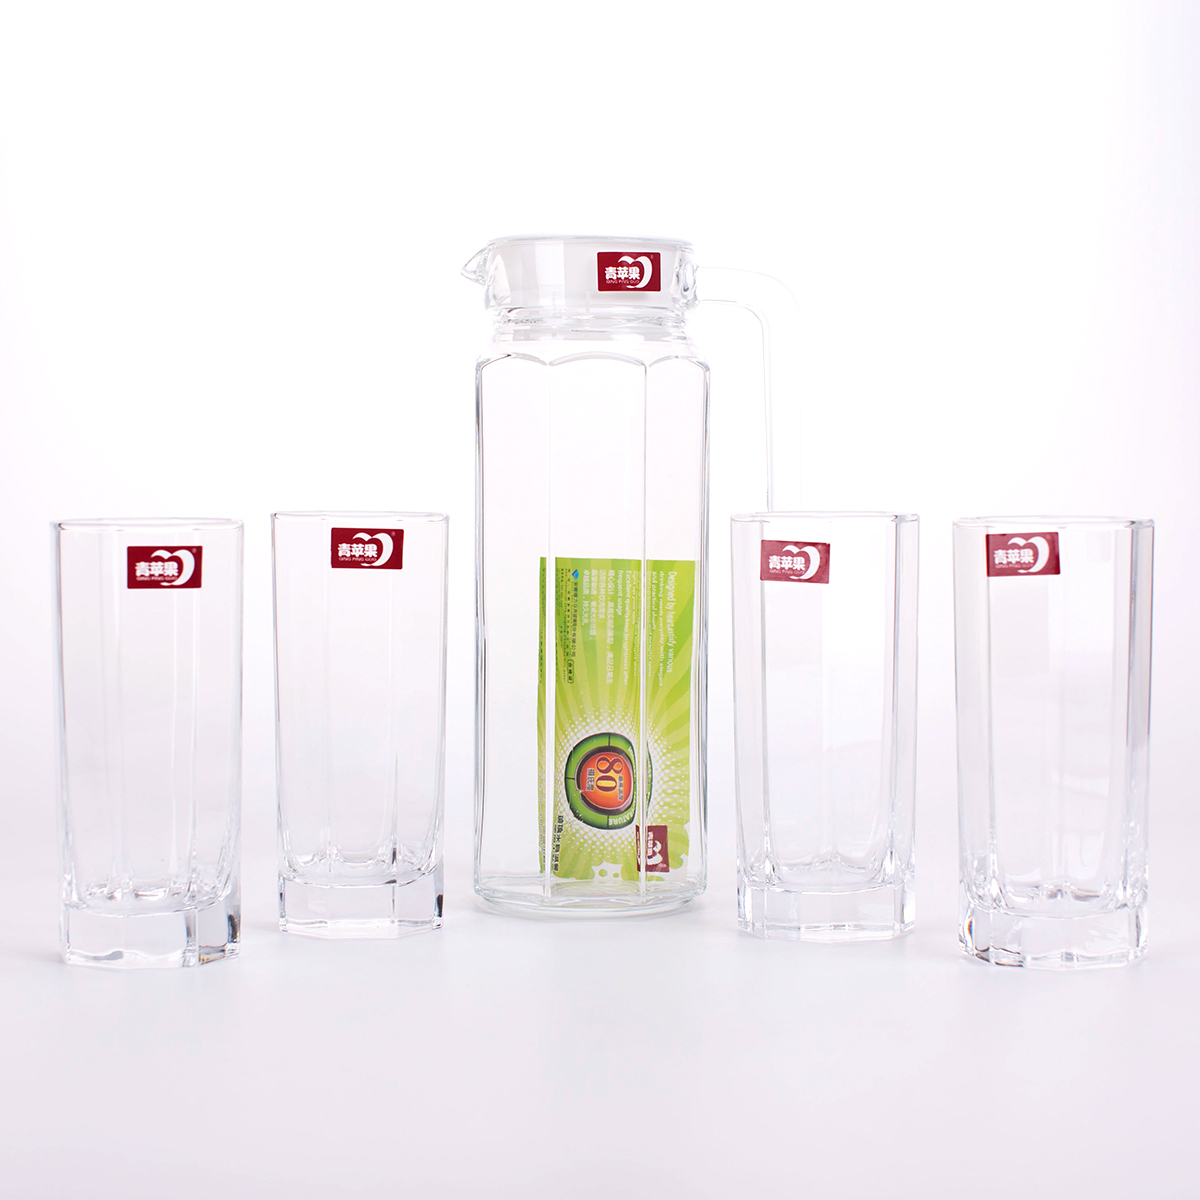 新品上市 青苹果 5件套玻璃杯水具套装 家用水杯杯具 玻璃杯套装